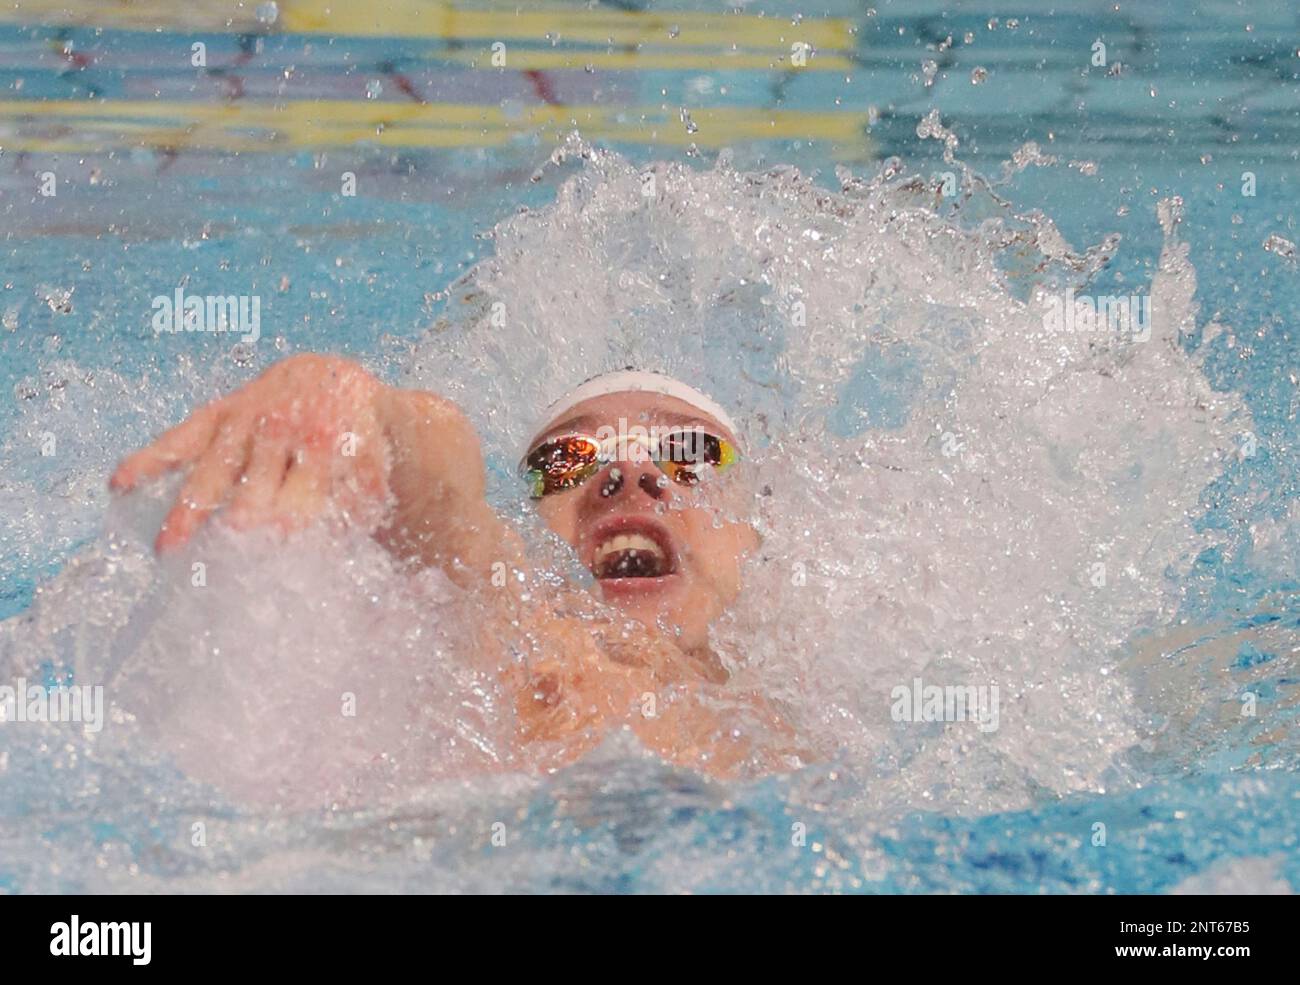 Australia's LARKIN Mitchel competes in the Men's 100m Backstroke Final ...